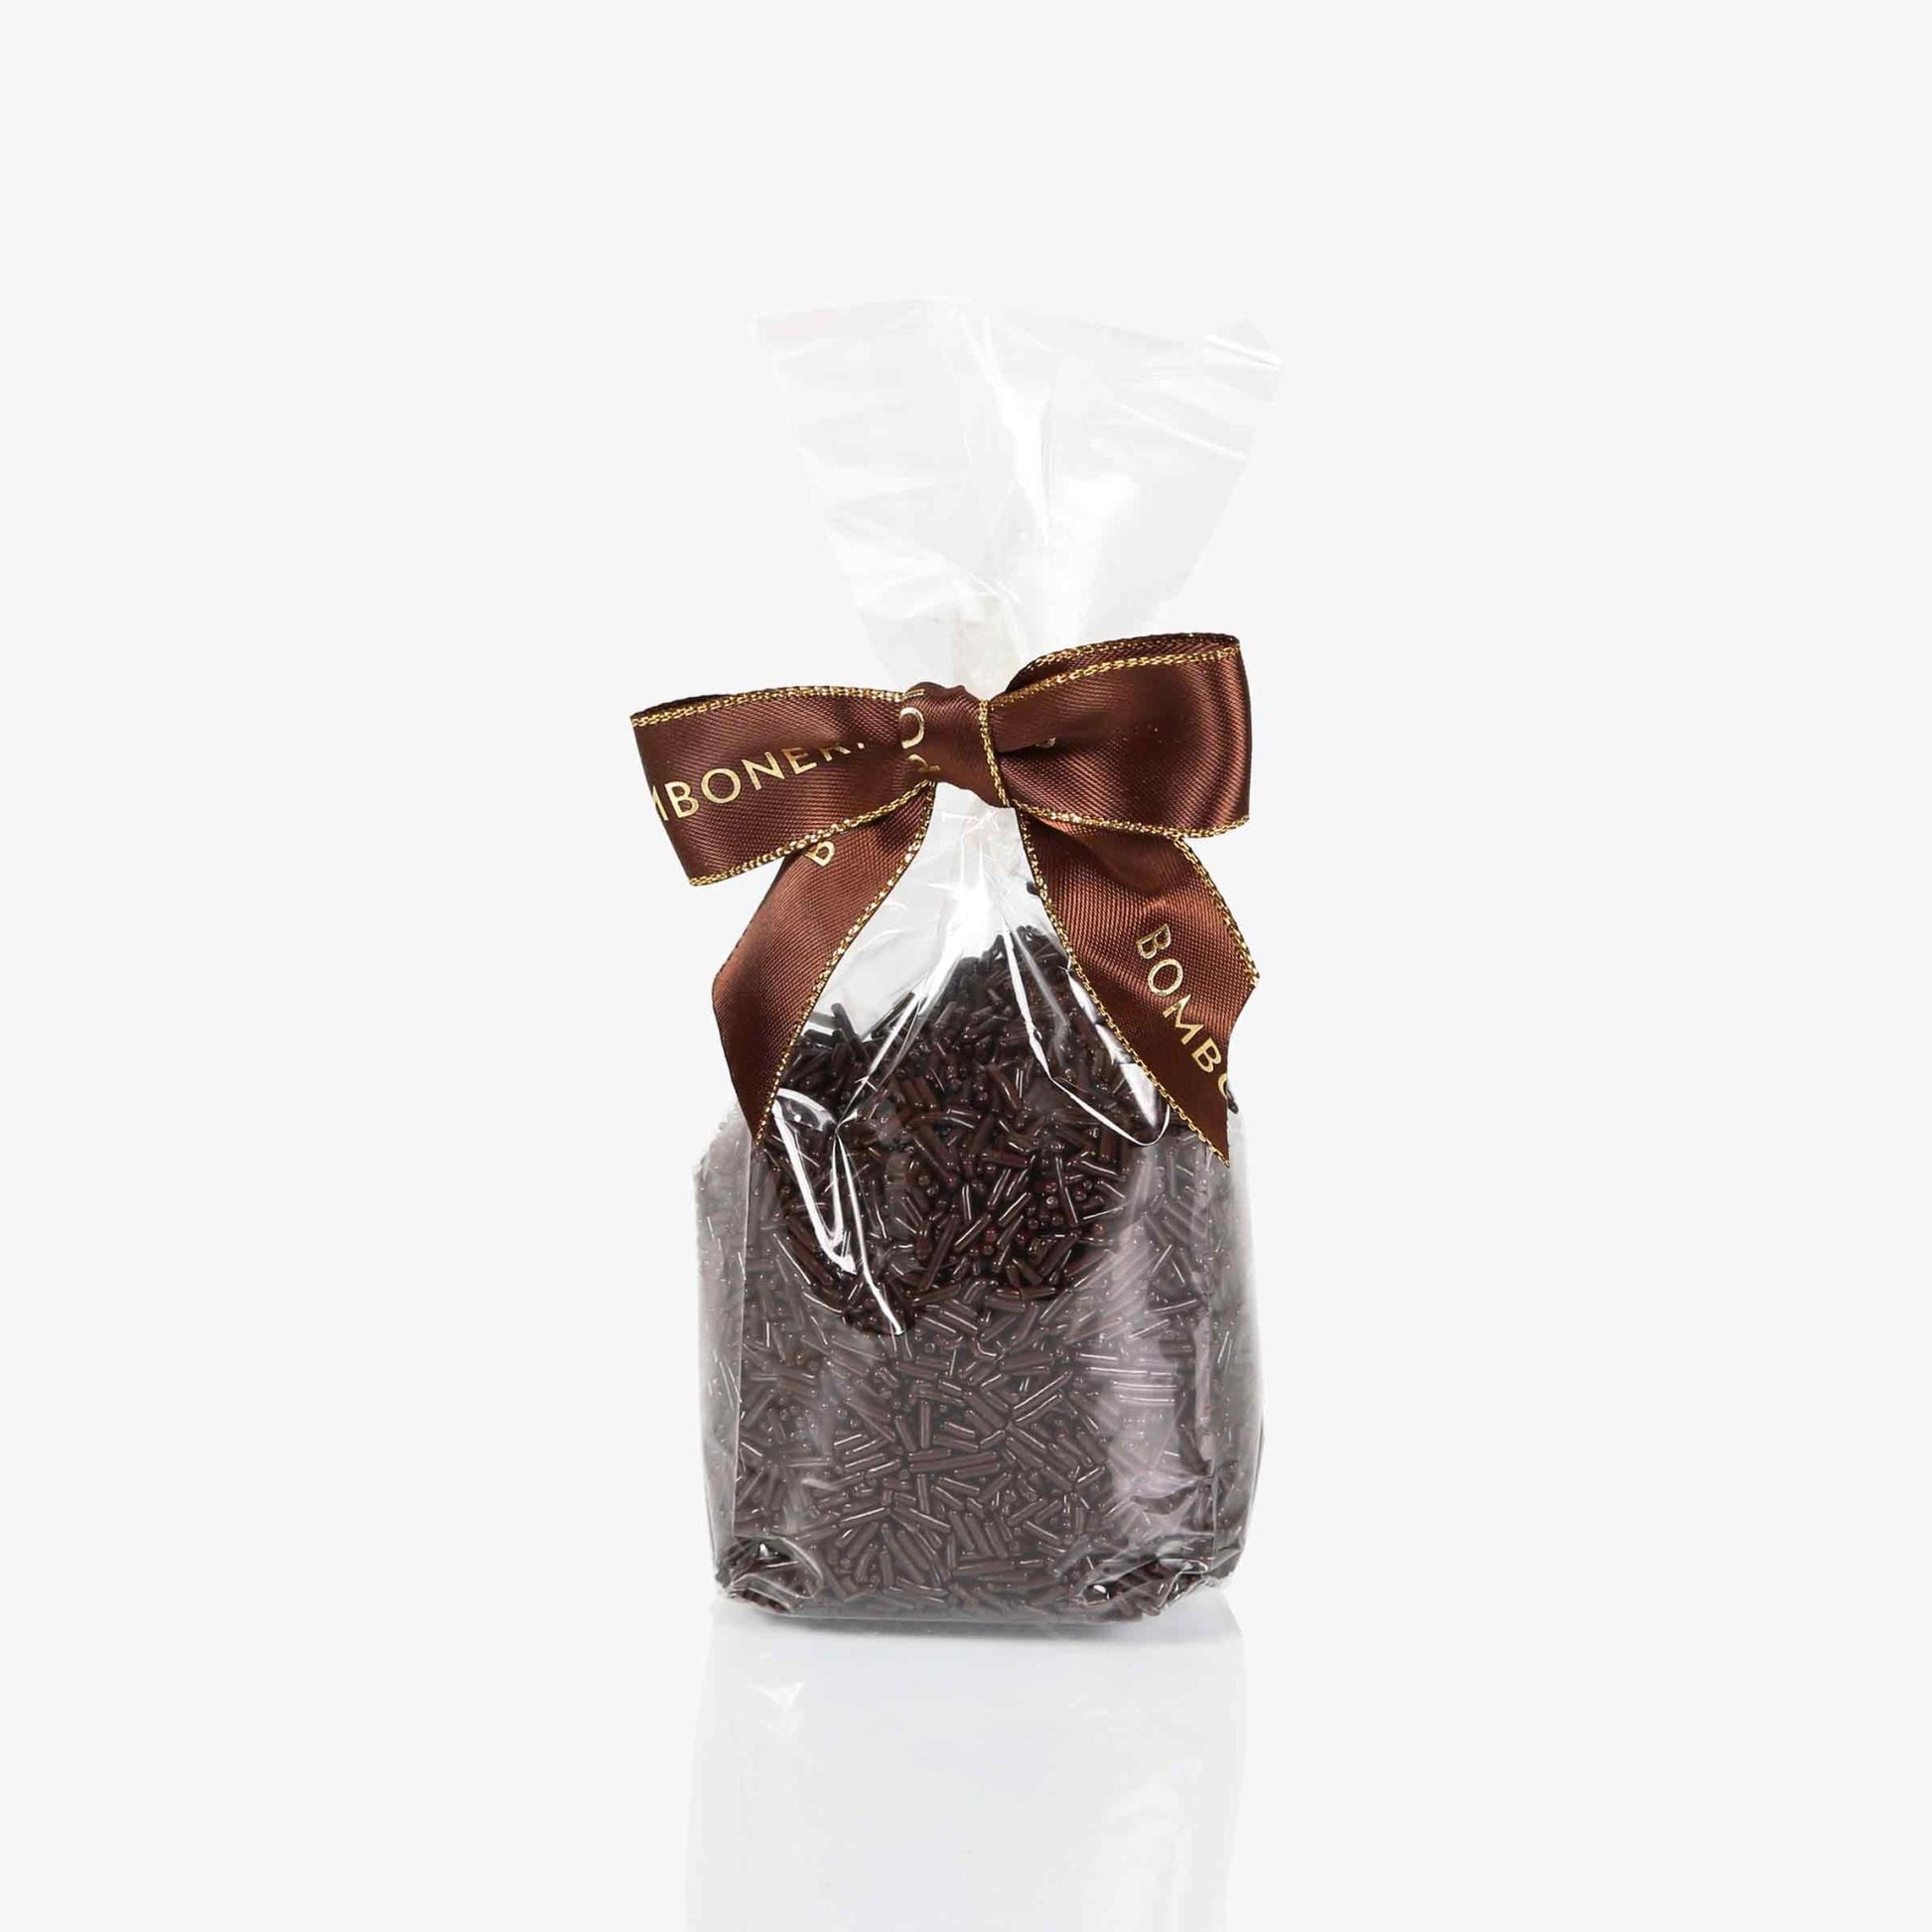 Fideos de chocolate - Bolsa 150g - Bombonería Pons - Decoraciones